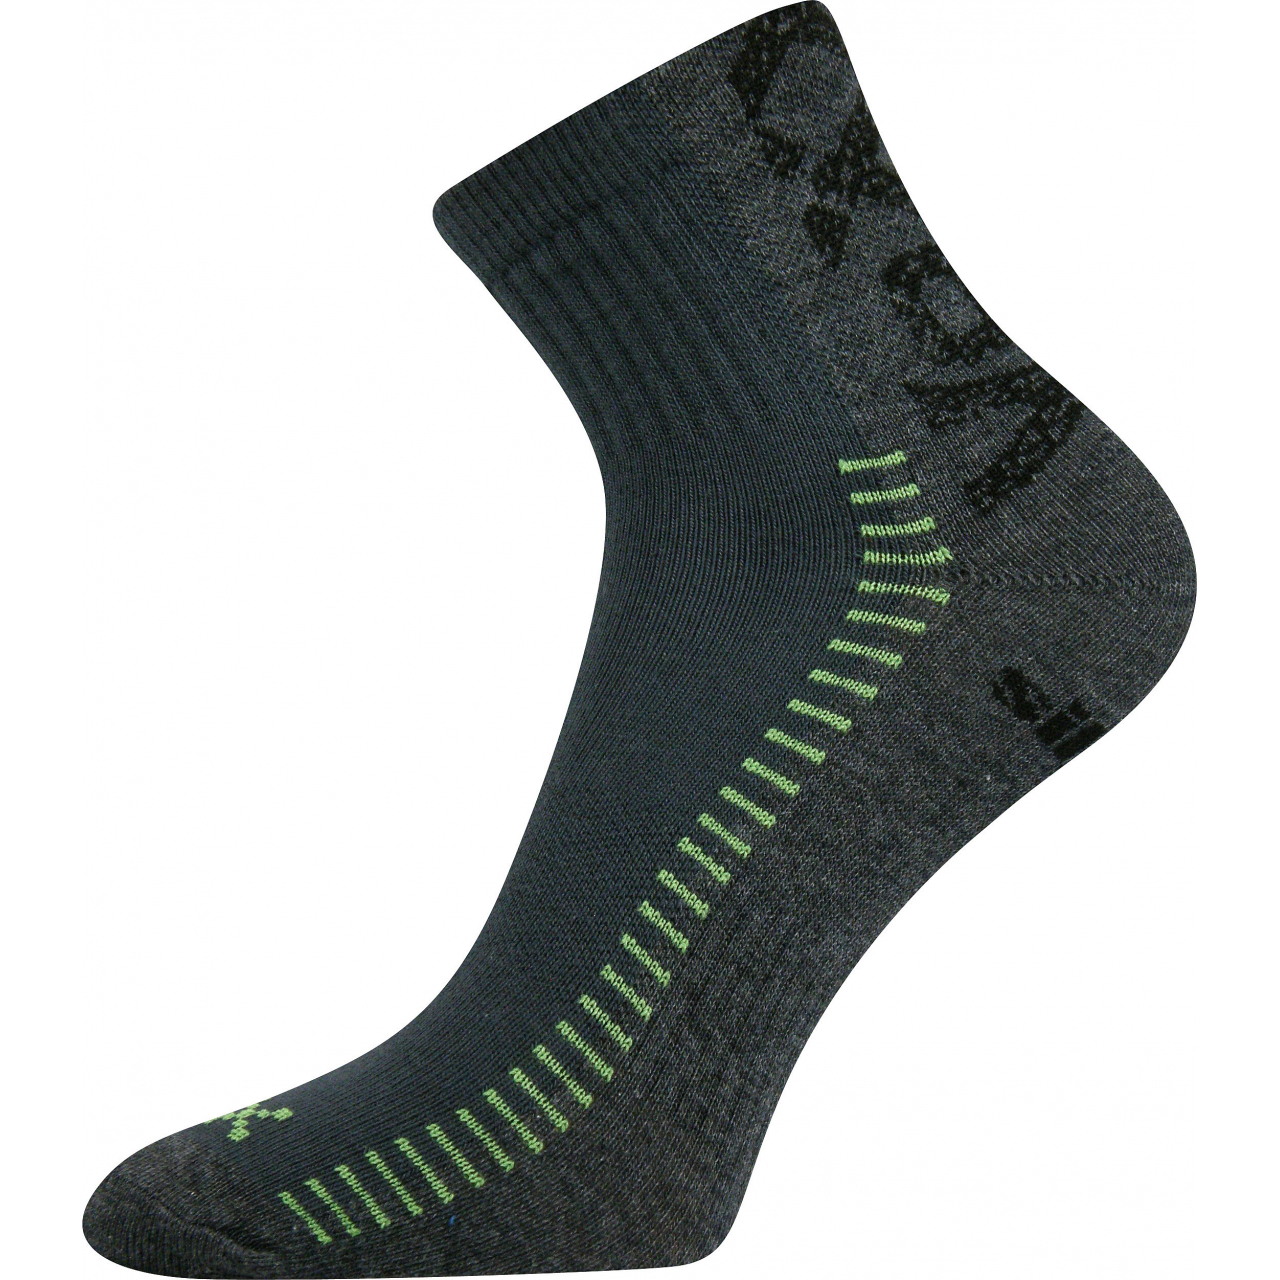 Ponožky sportovní Voxx Revolt - antracitové-šedé, 35-38